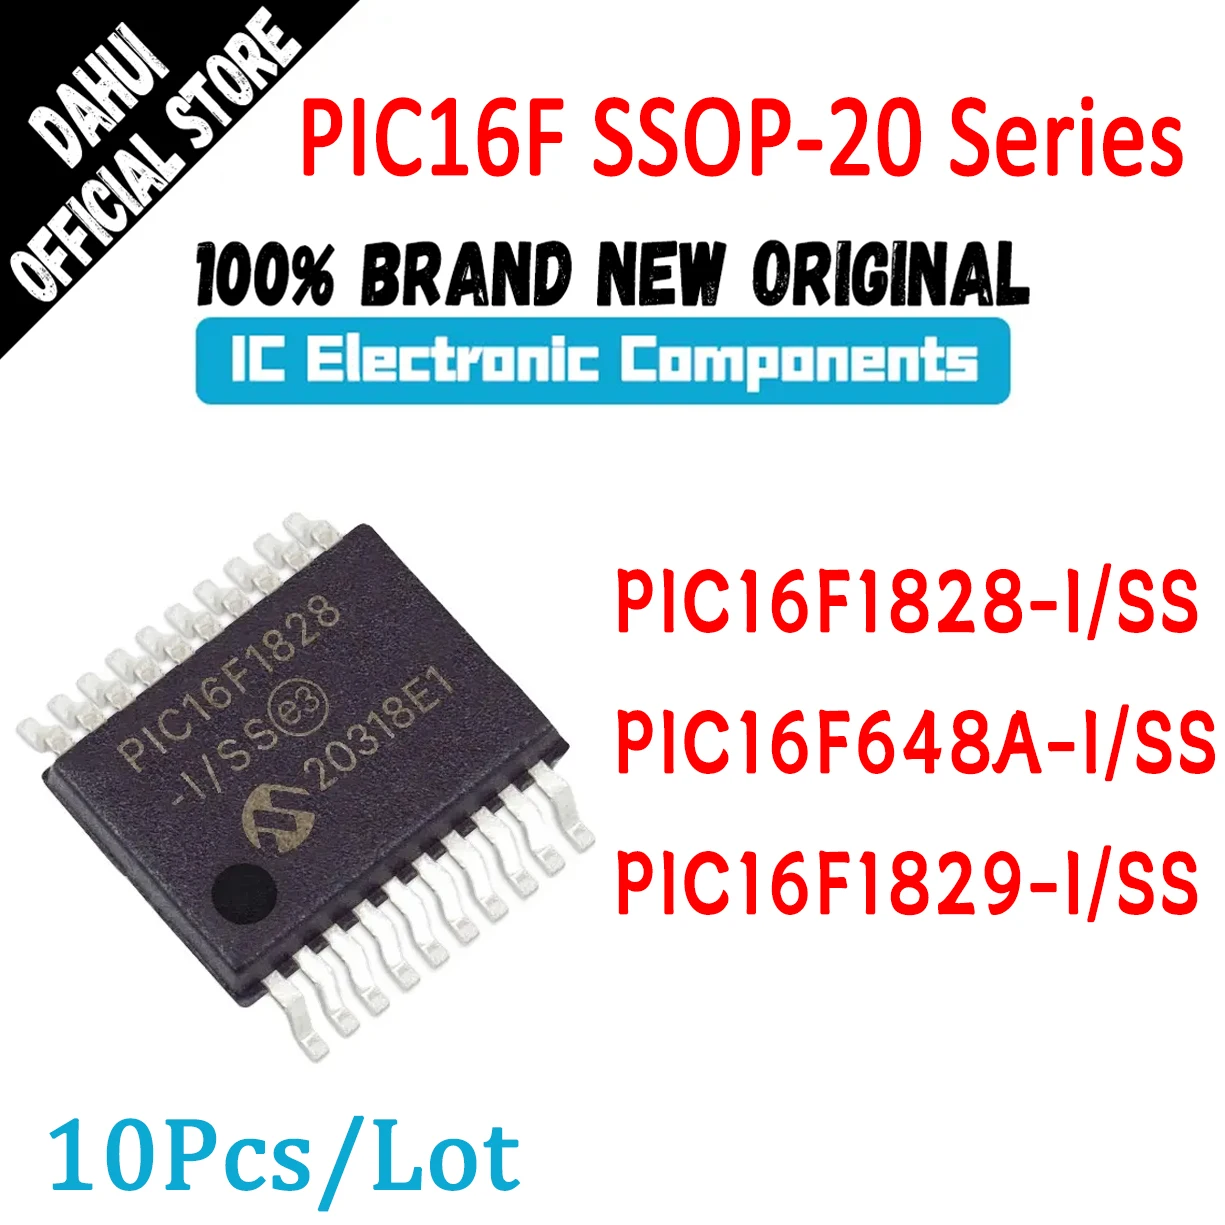 

10Pcs/Lot PIC16F1828-I/SS PIC16F648A-I/SS PIC16F1829-I/SS PIC16F1828-I PIC16F648A-I PIC16F1829-I PIC16F PIC IC MCU Chip SSOP-20